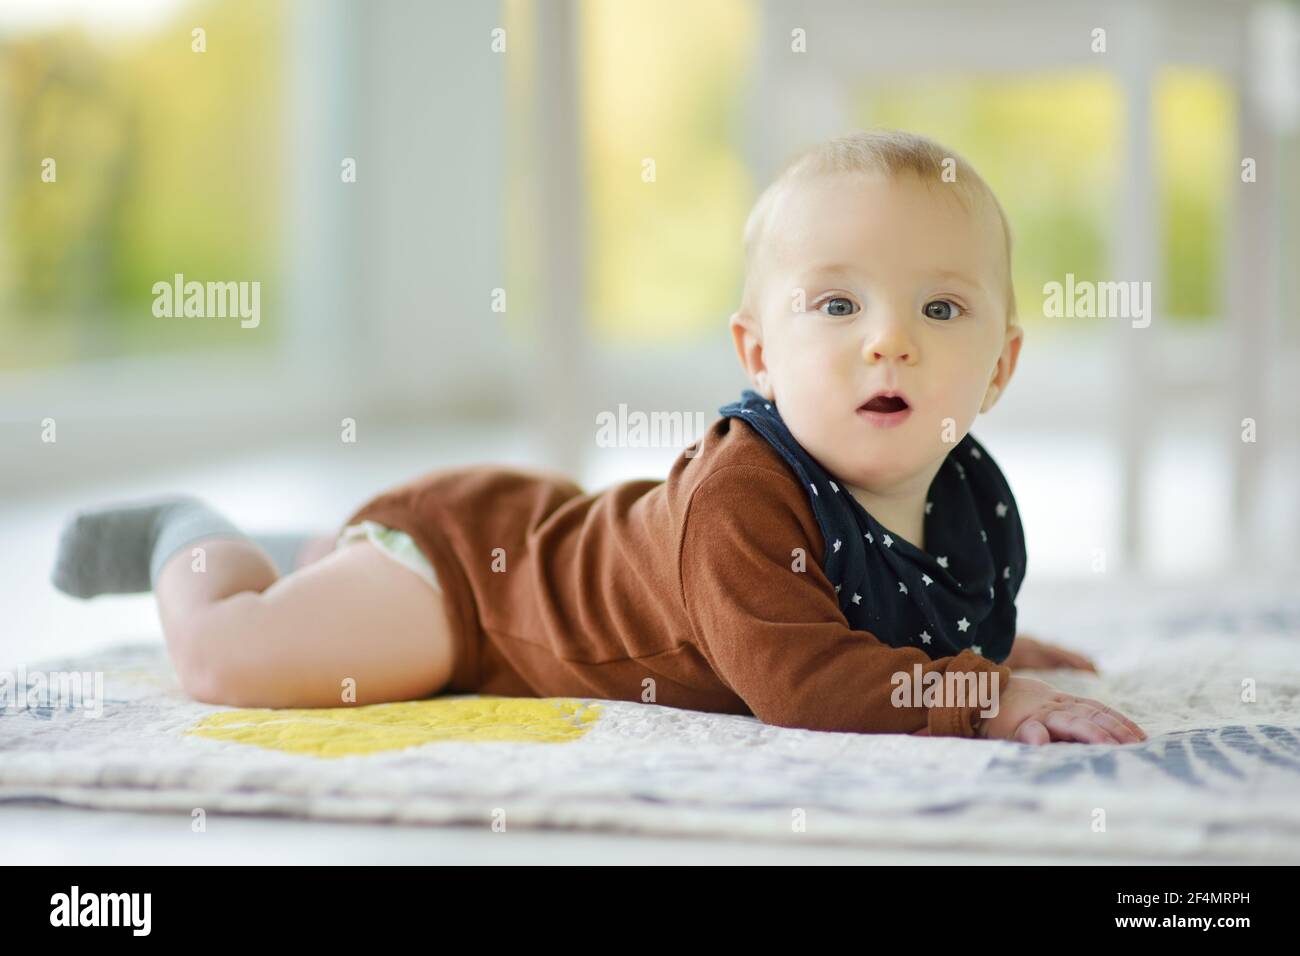 Niedlicher fünf Monate alter Junge, der auf seinem Bauch liegt. Baby während der Bauchzeit. Liebenswert kleines Kind lernen zu kriechen. Stockfoto